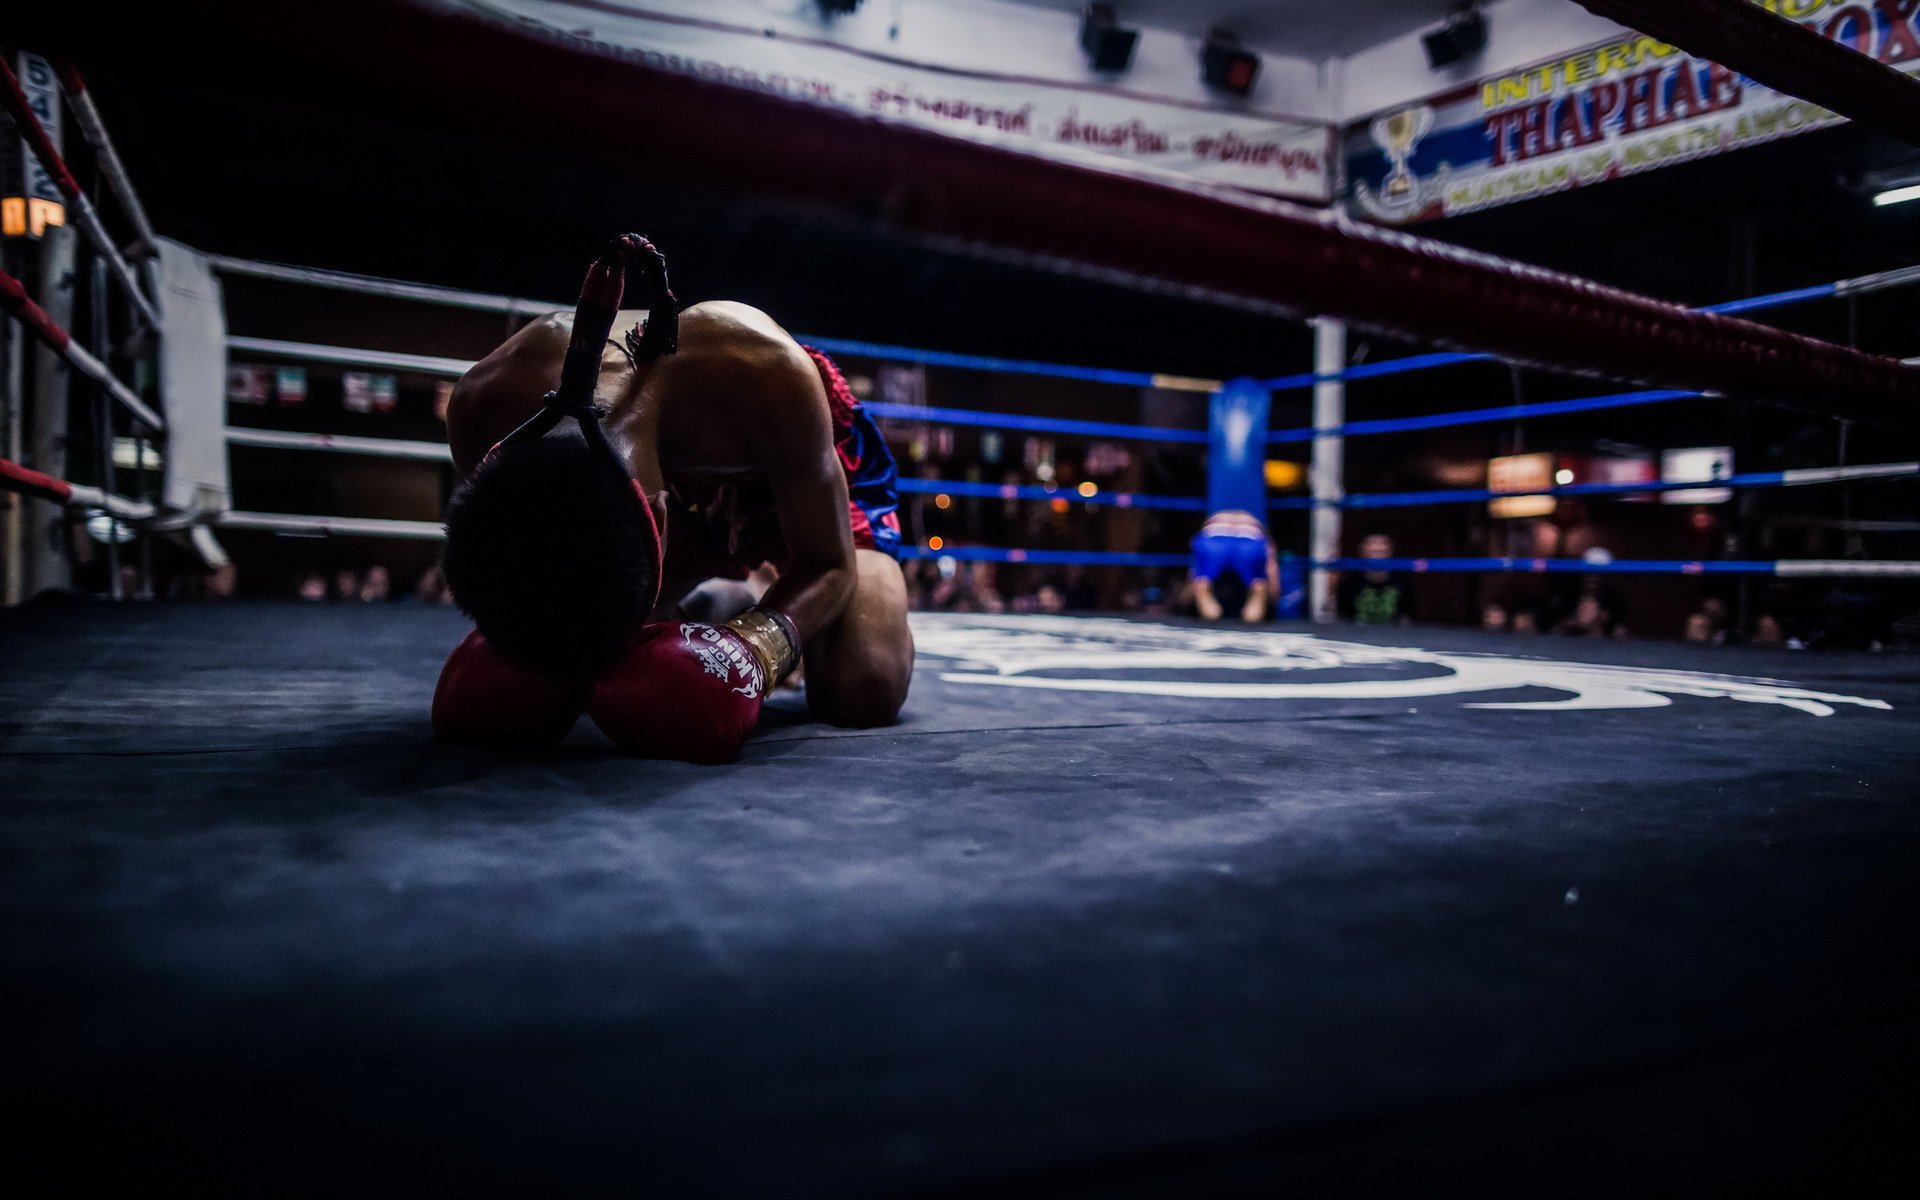 boxe wallpaper,sport venue,boxing ring,combat sport,boxing,contact sport